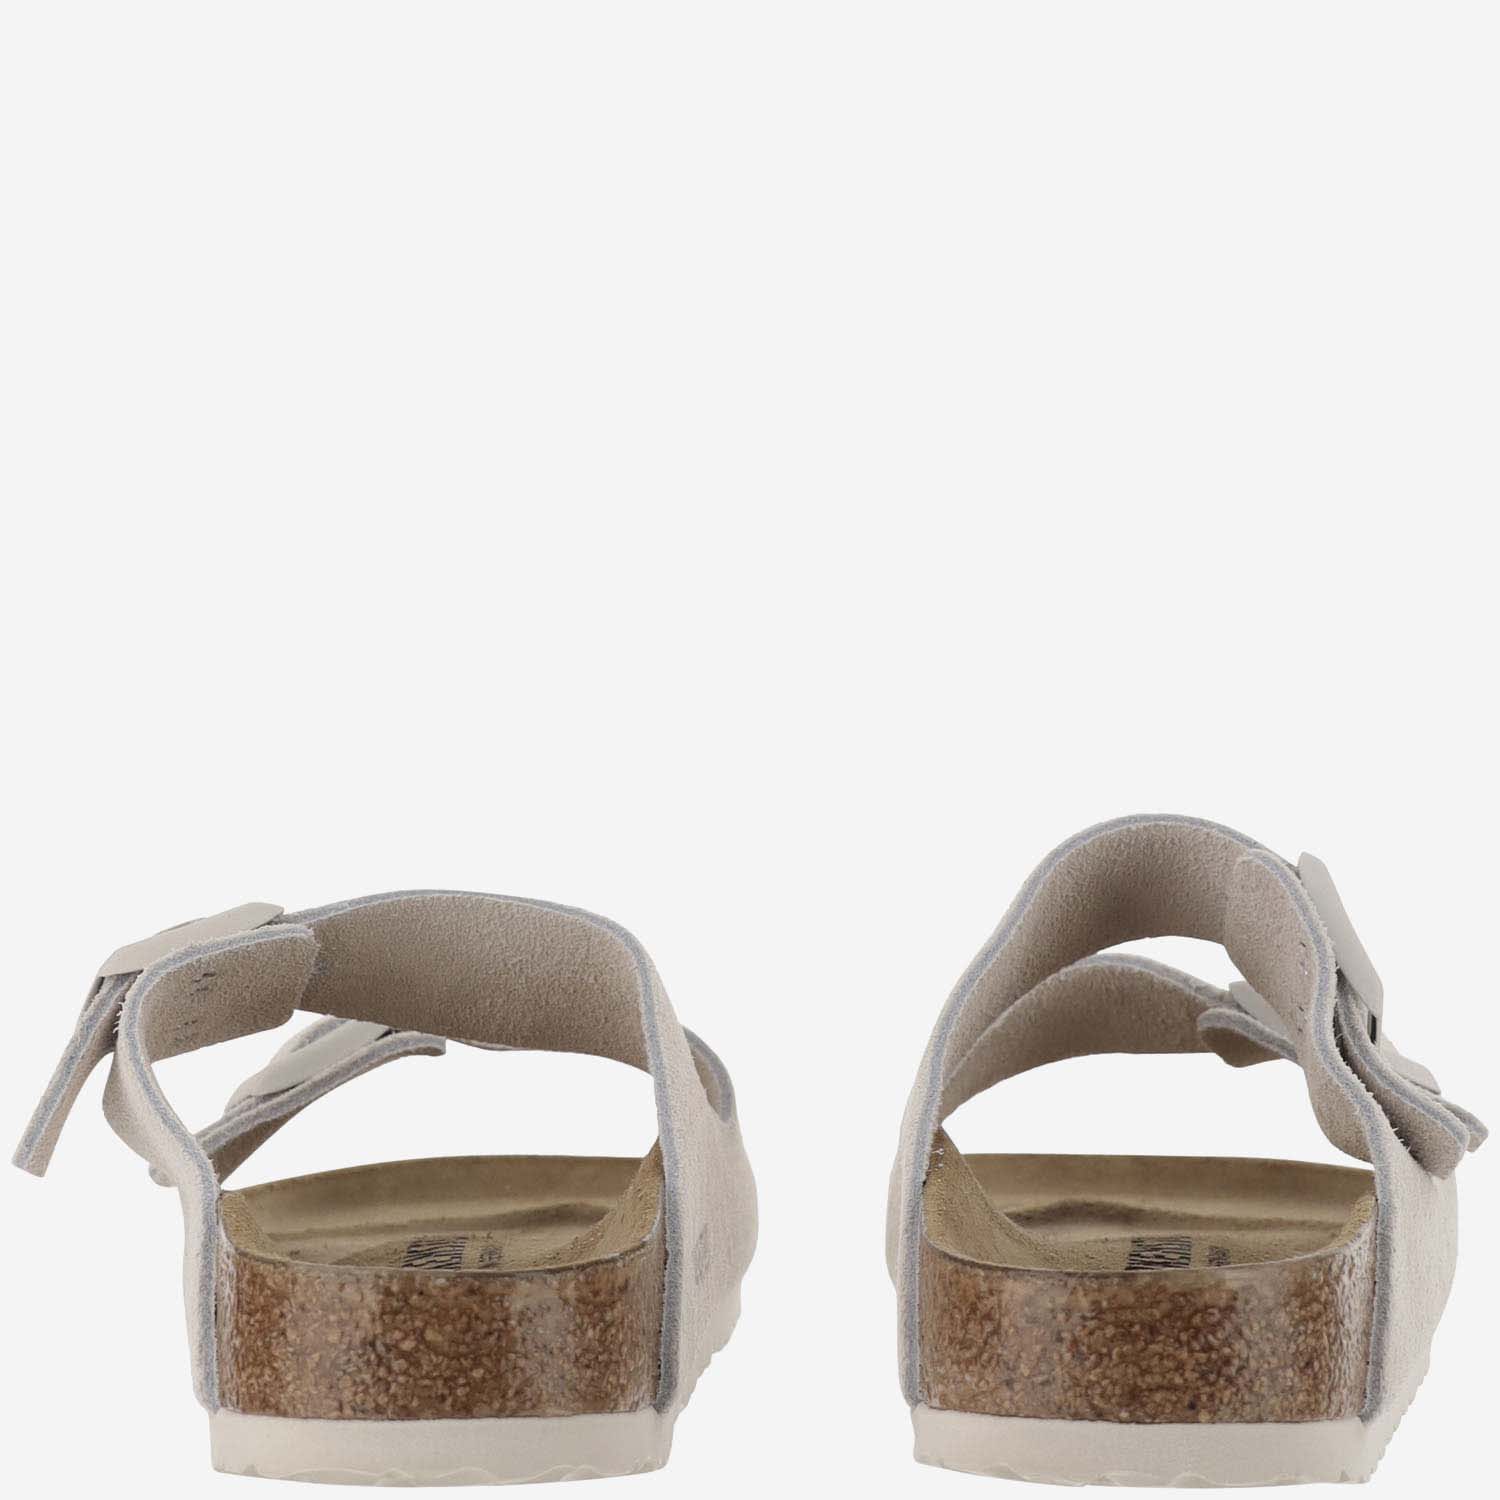 Shop Birkenstock Arizona Suede Sandals In Grey